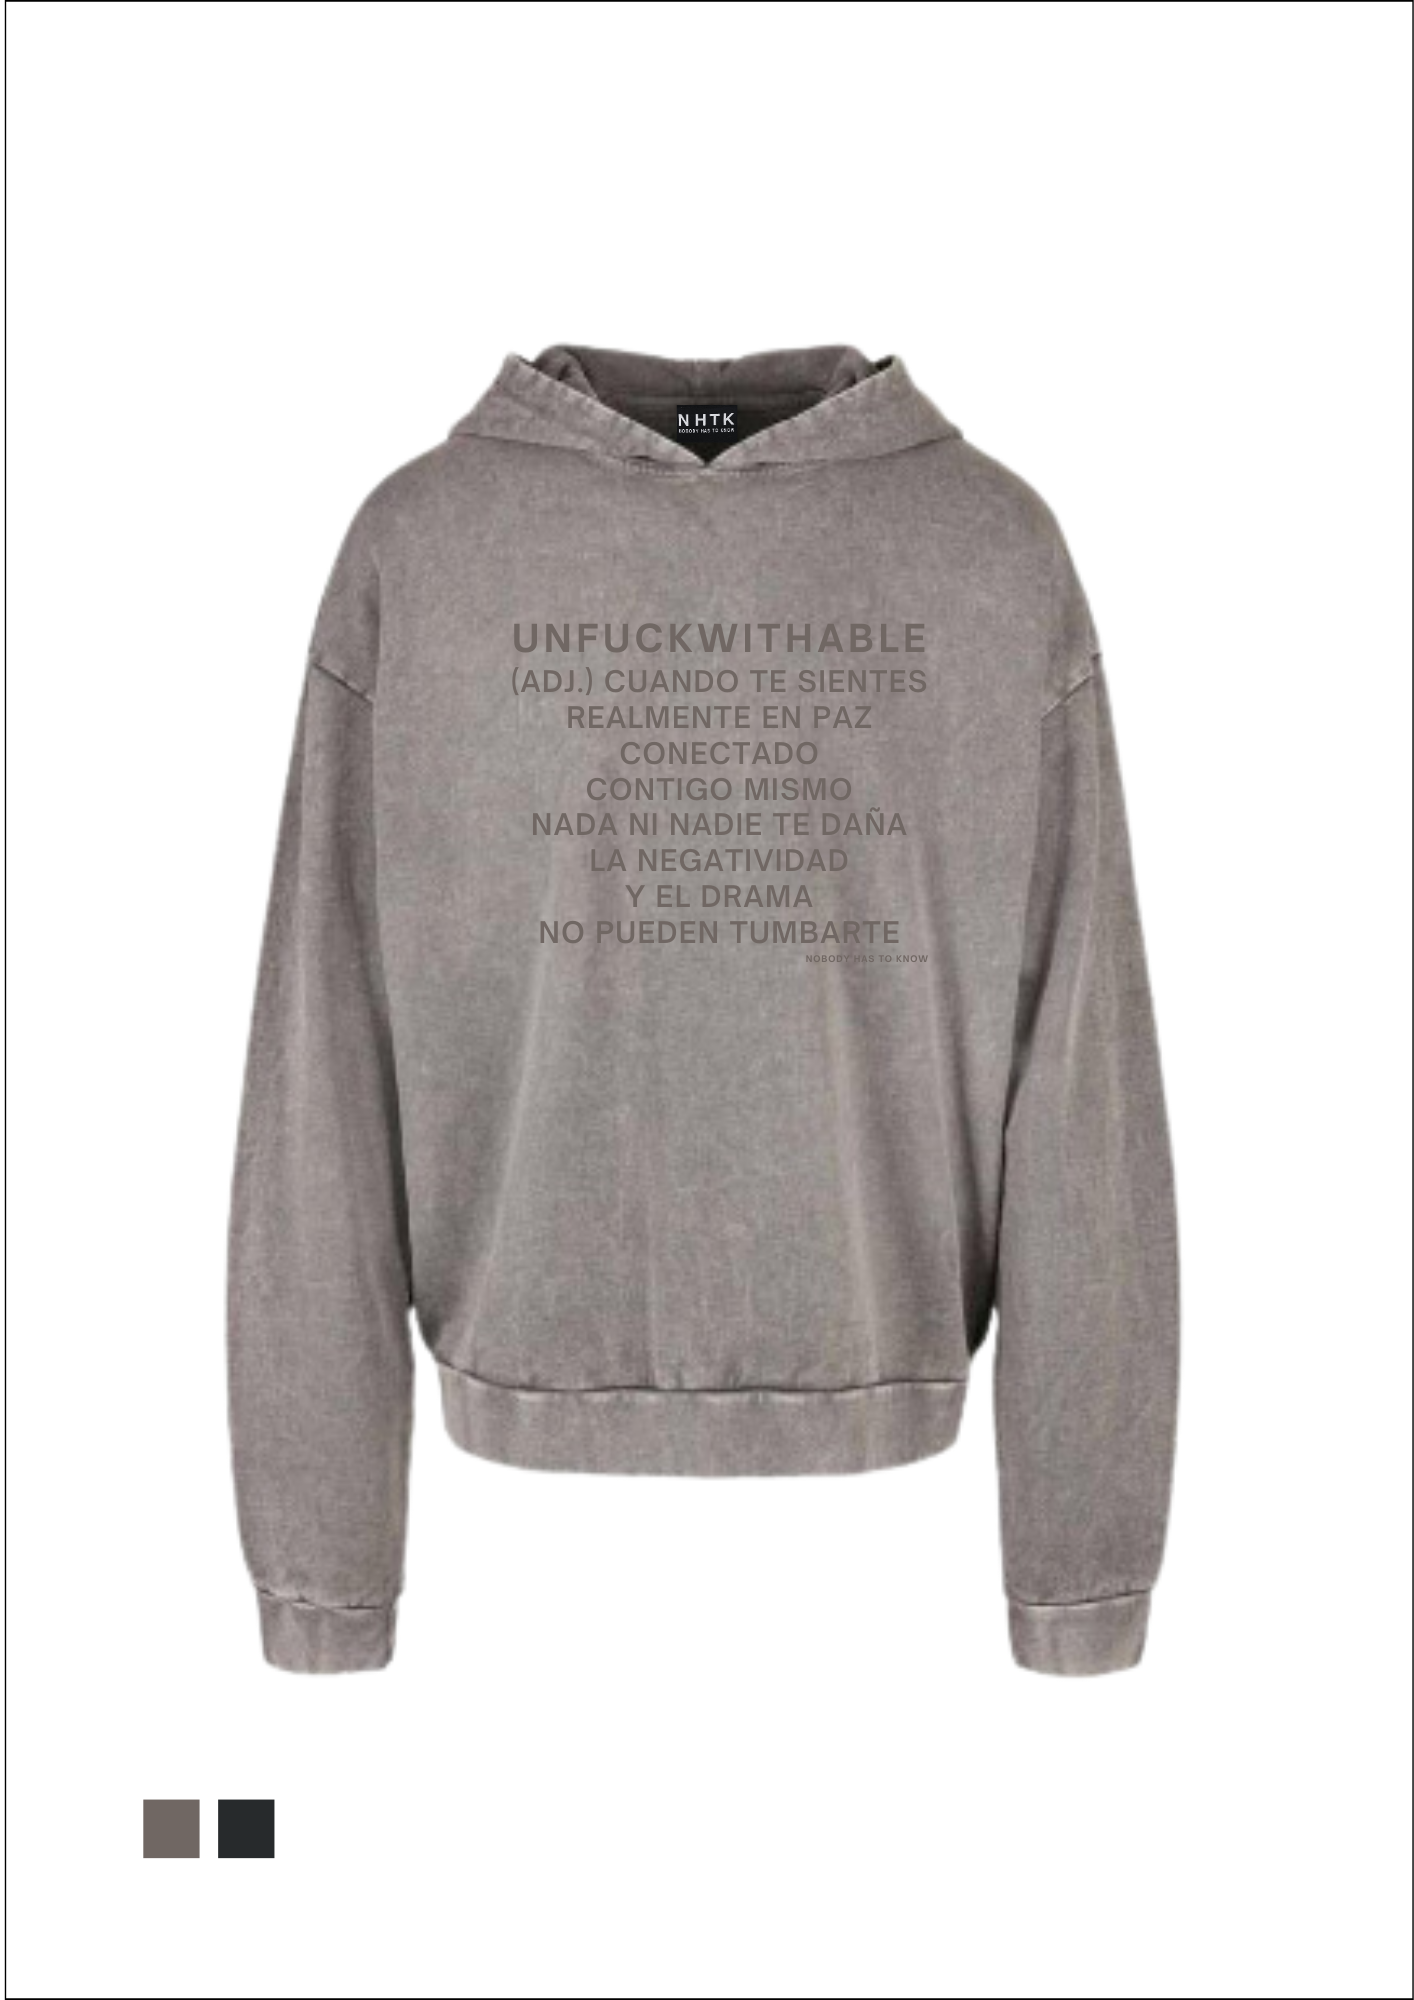 Unfuckwithable (S) hoodie -  acid grey